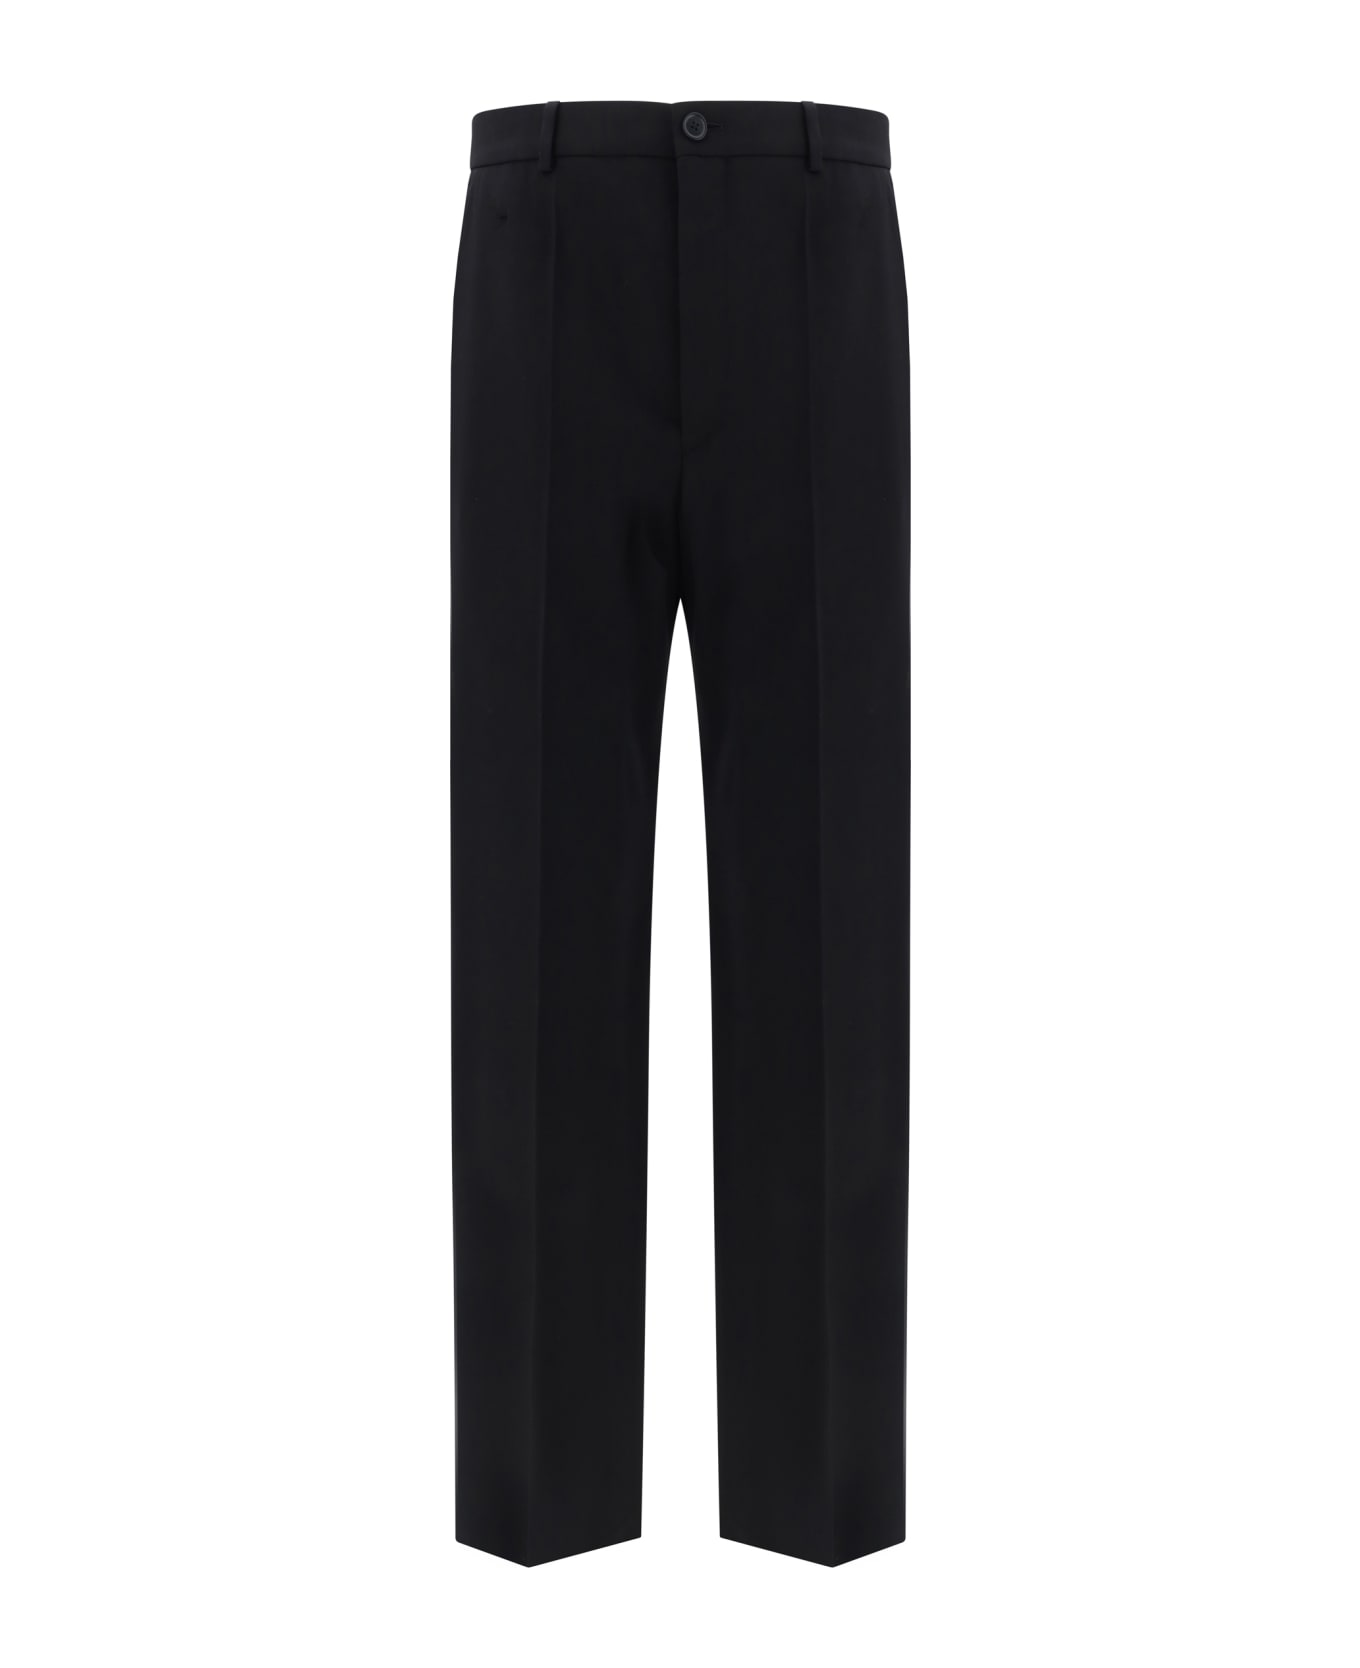 Balenciaga Wool Pants - Black ボトムス